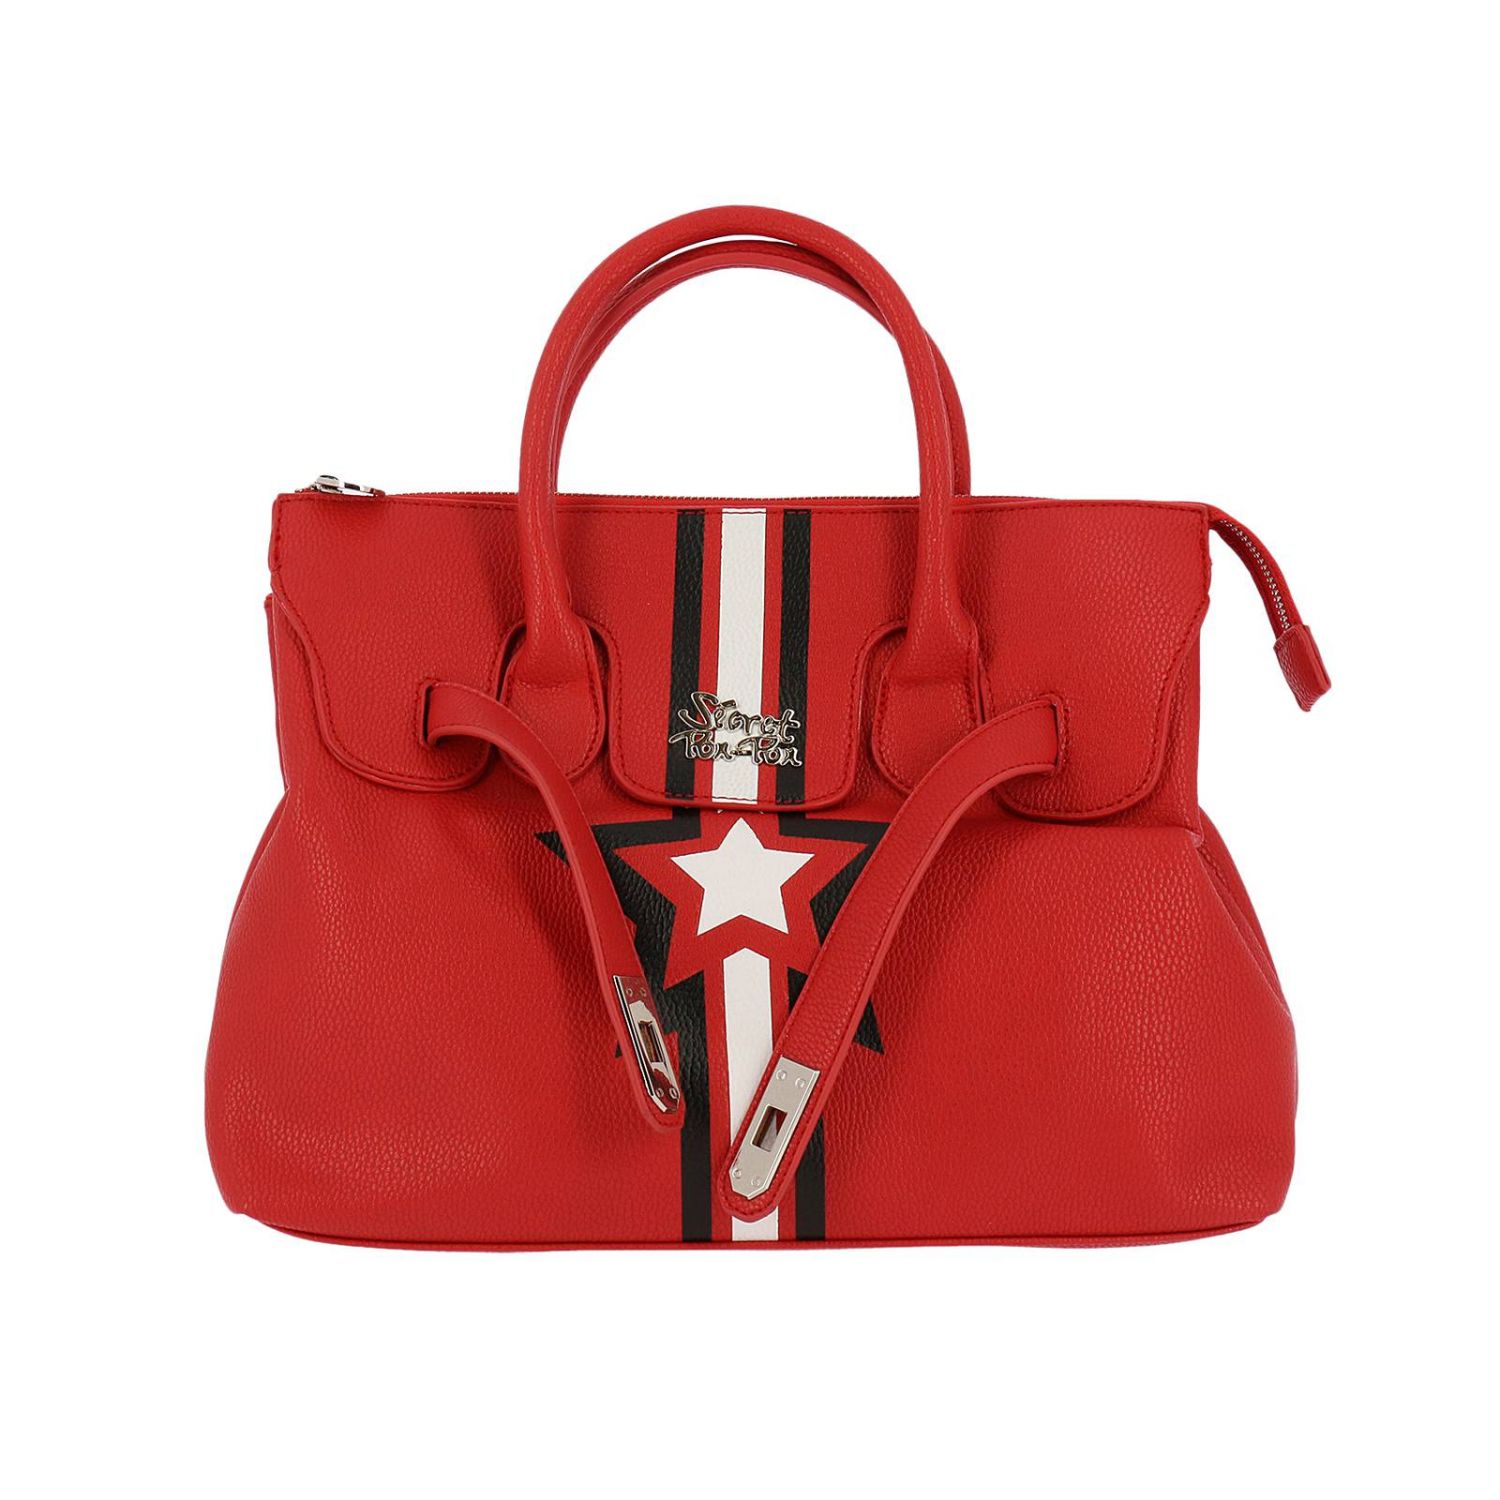 Secret Pon-Pon Outlet: Shoulder bag women - Red | Handbag Secret Pon ...